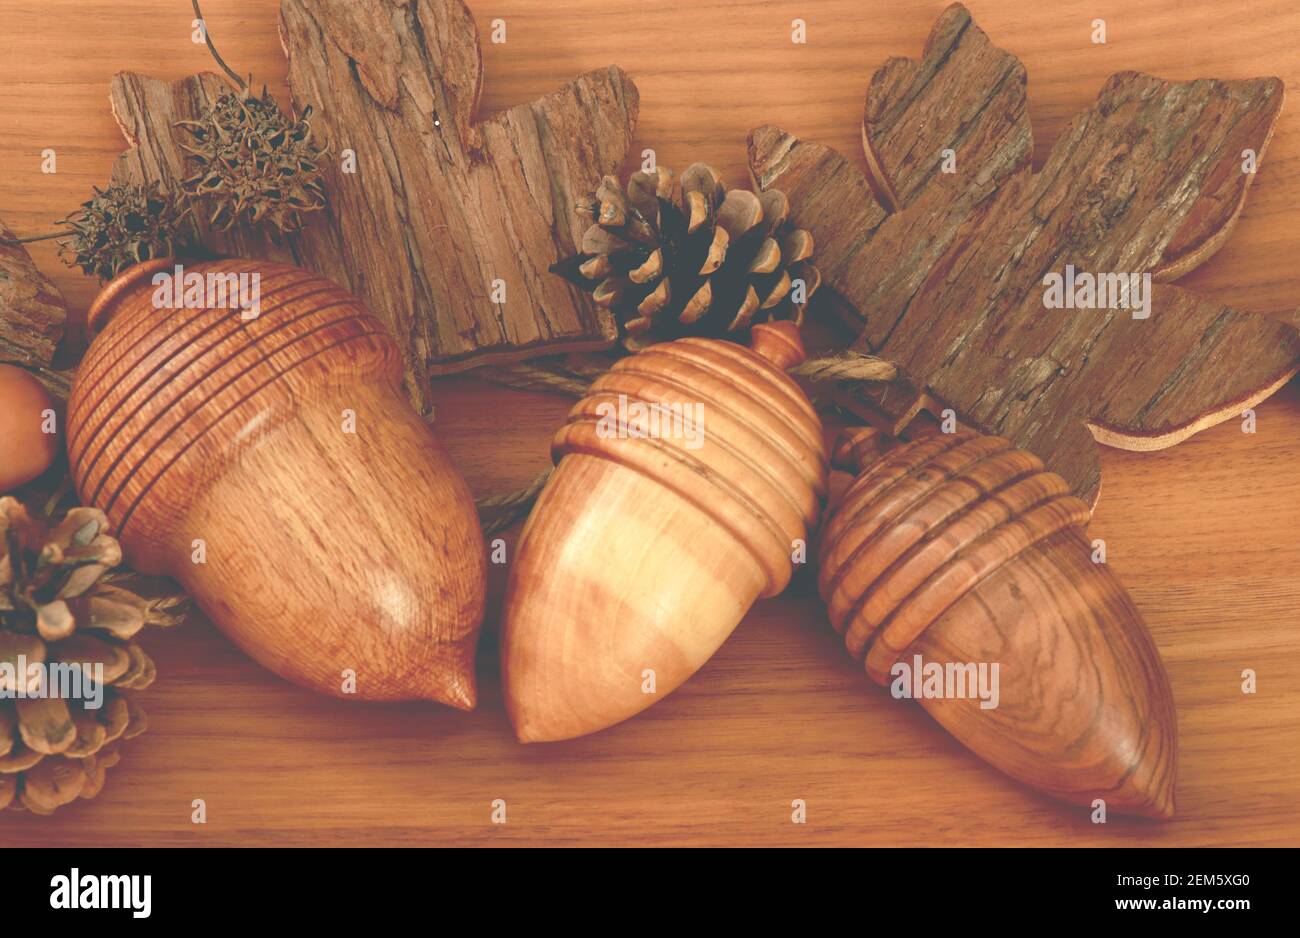 Decoración interior tres bellotas de madera de olivo Foto de stock